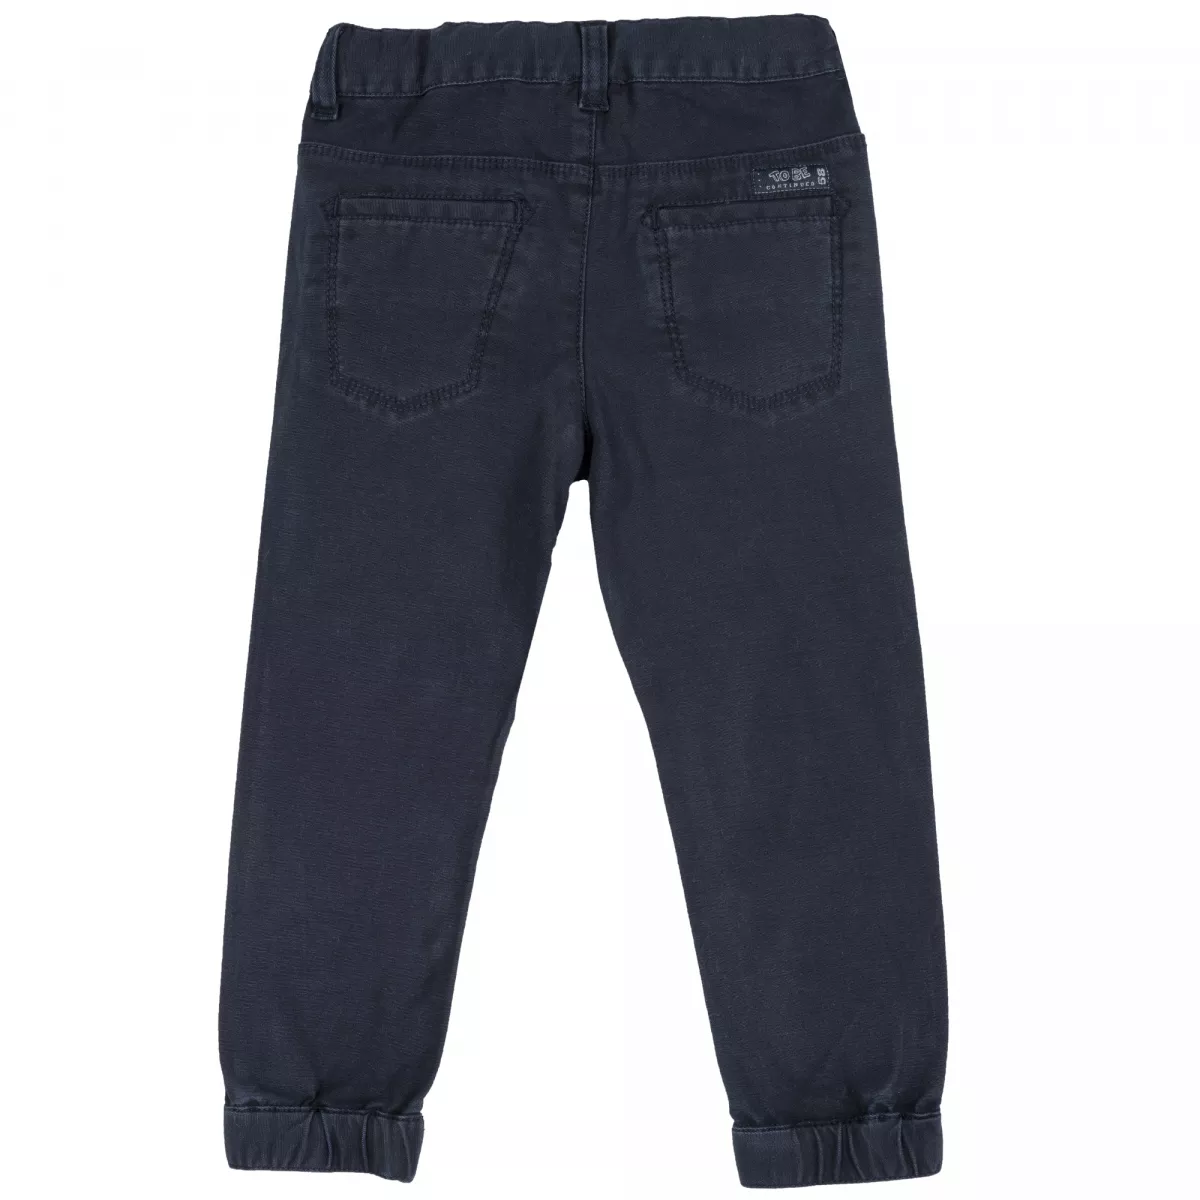 Pantalon copii Chicco, albastru, 116